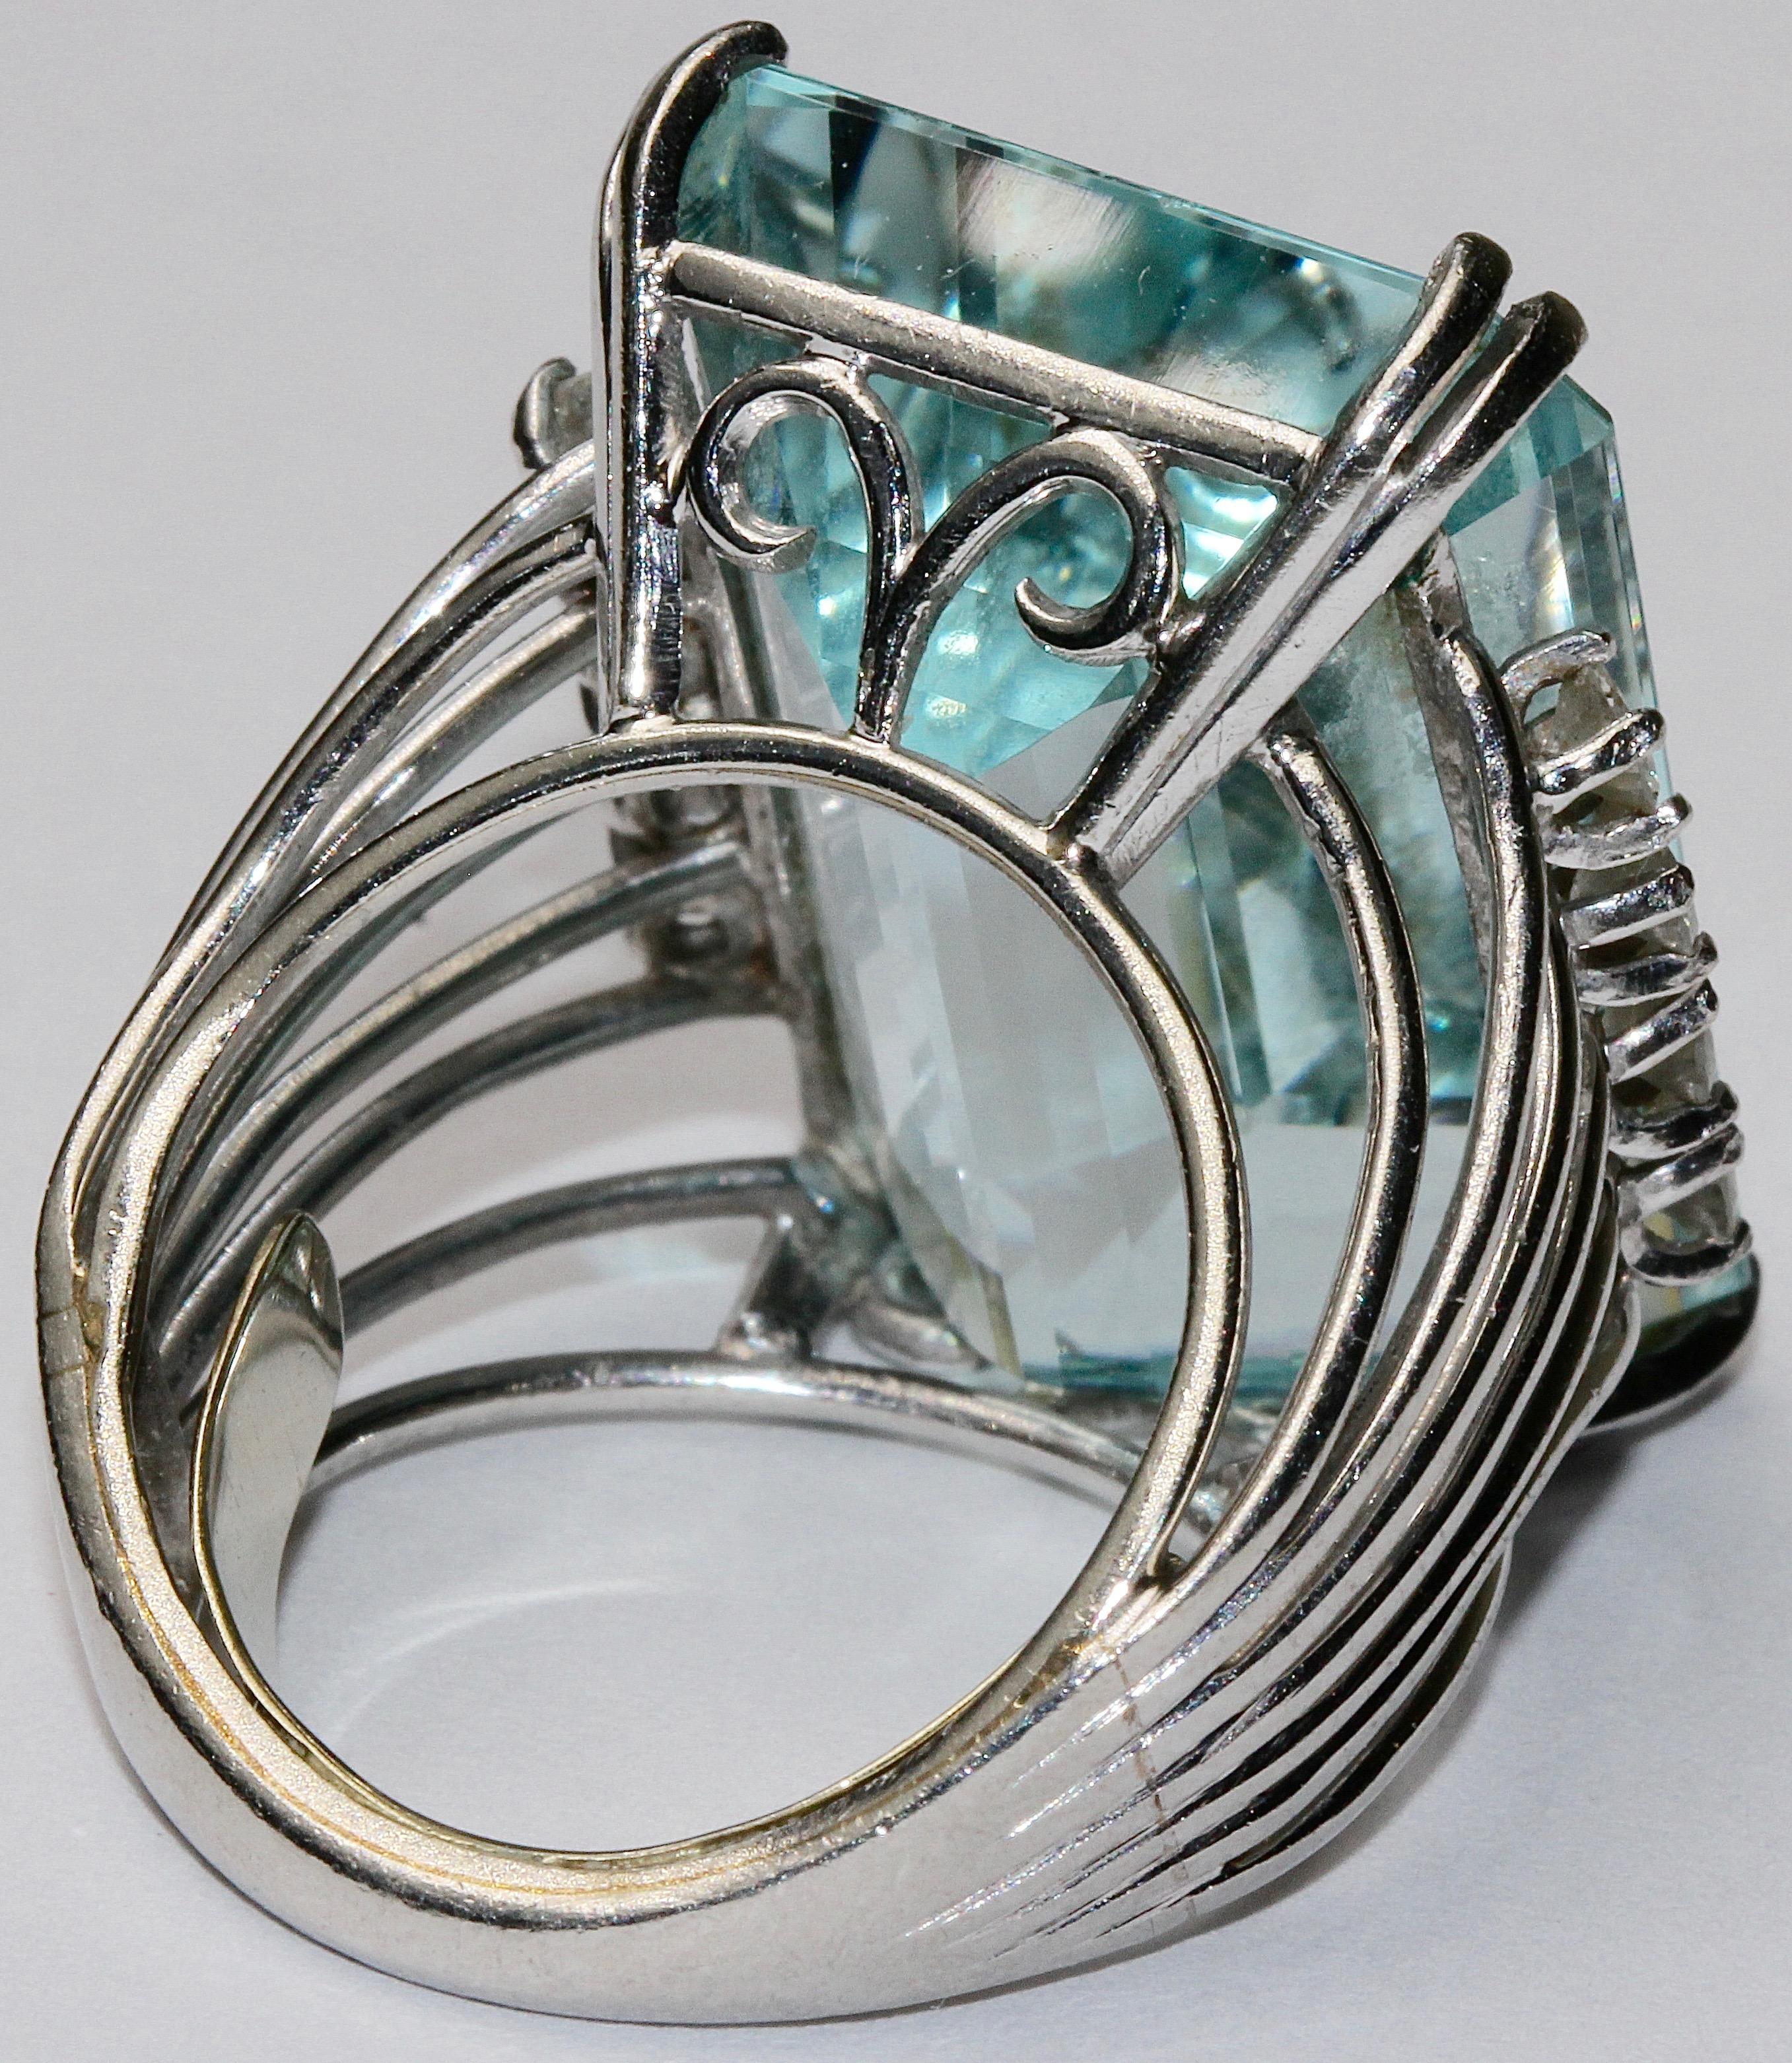 Emerald Cut Large 14 Karat White Gold Ring Set with Huge Aquamarine circa 30 Carat